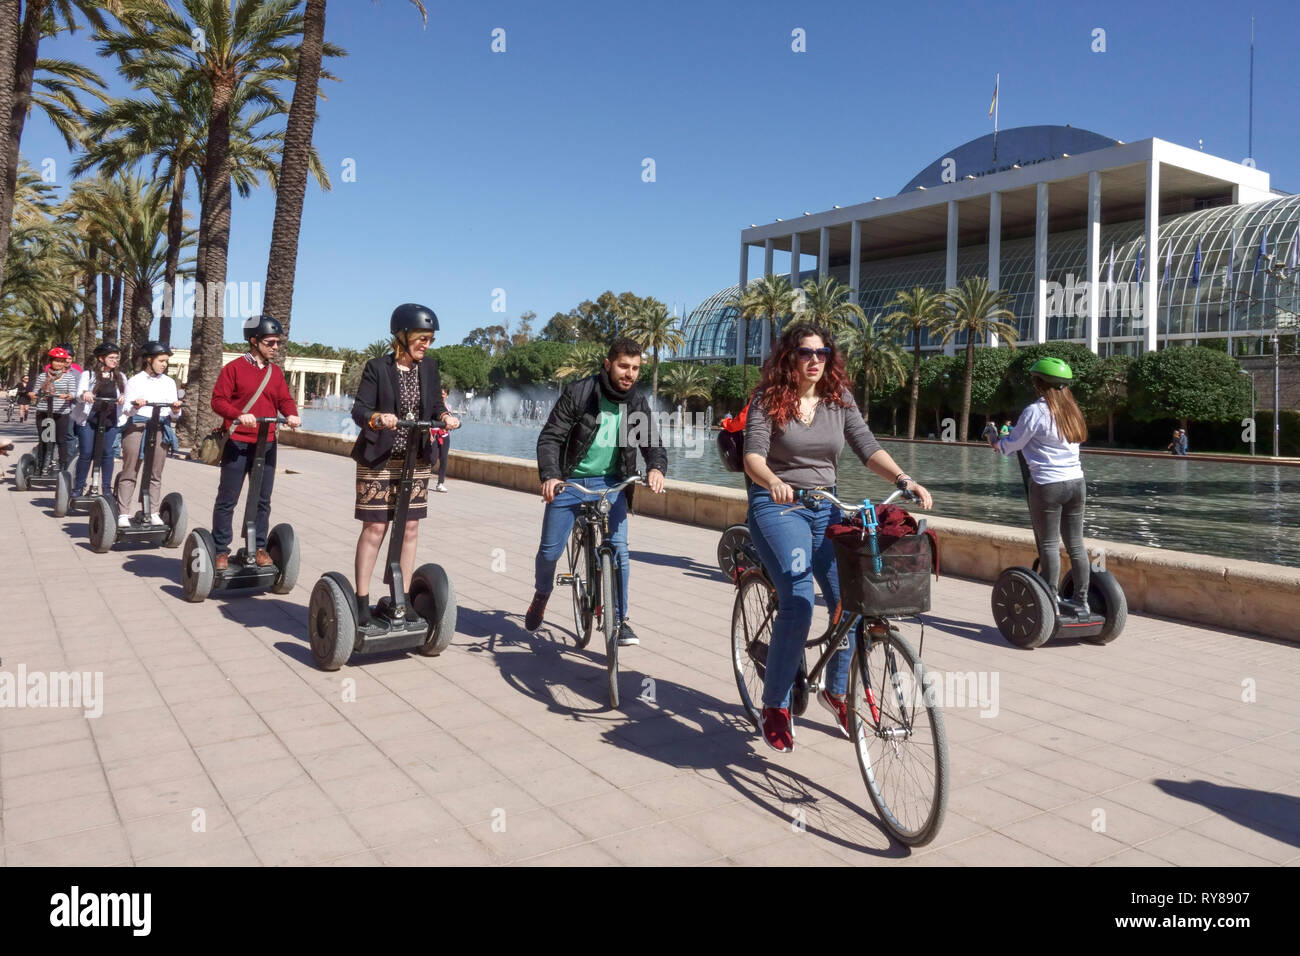 Spanien Touristen Valencia Turia Park, Leute auf dem Fahrrad vorbei Segways Tour Platz vor dem Music Palace Valencia Spanien Fahrrad Stadt Park Leute Radfahren Stockfoto